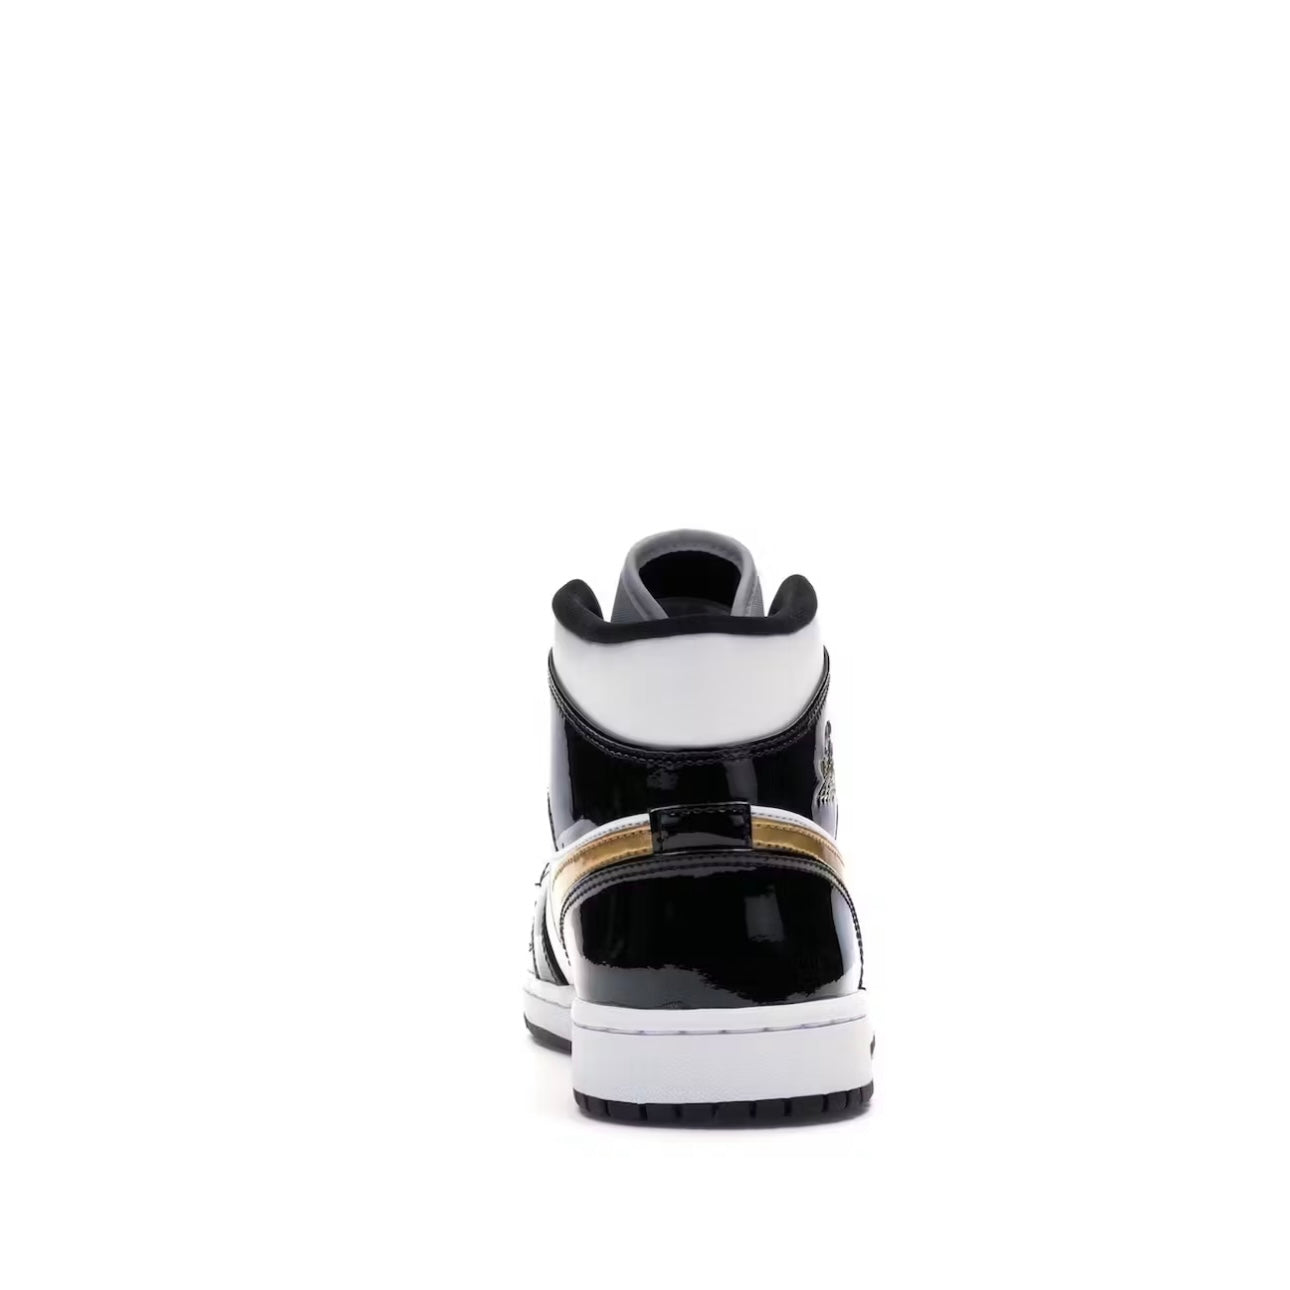 Air Jordan 1 Mid Patent gold - PENGUIN SHOES Penguin shoes